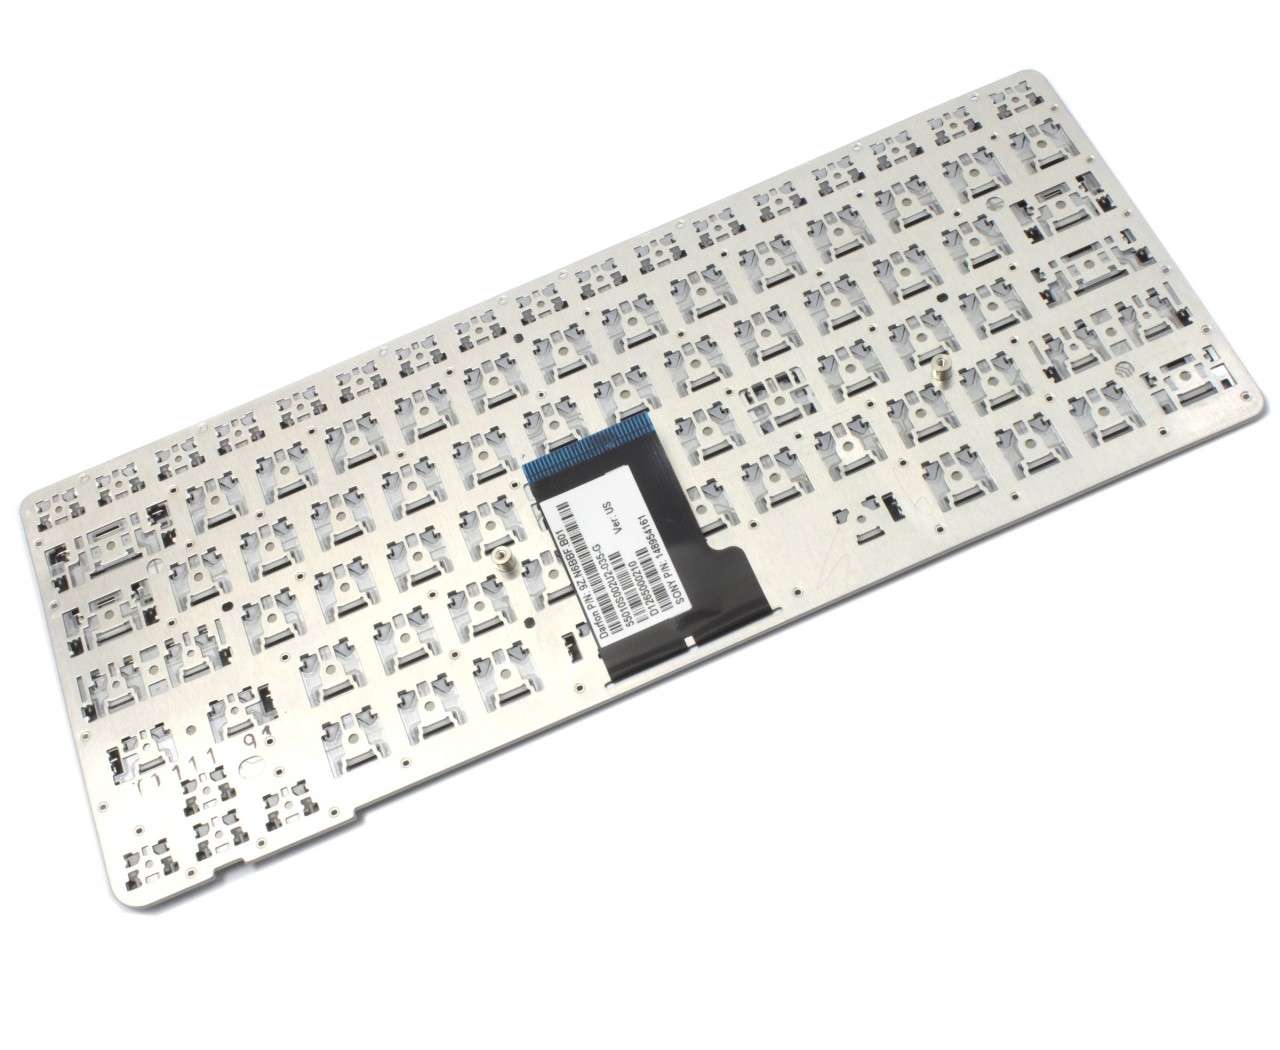 Tastatura argintie Sony 9Z N6BBF A01 layout US fara rama enter mic